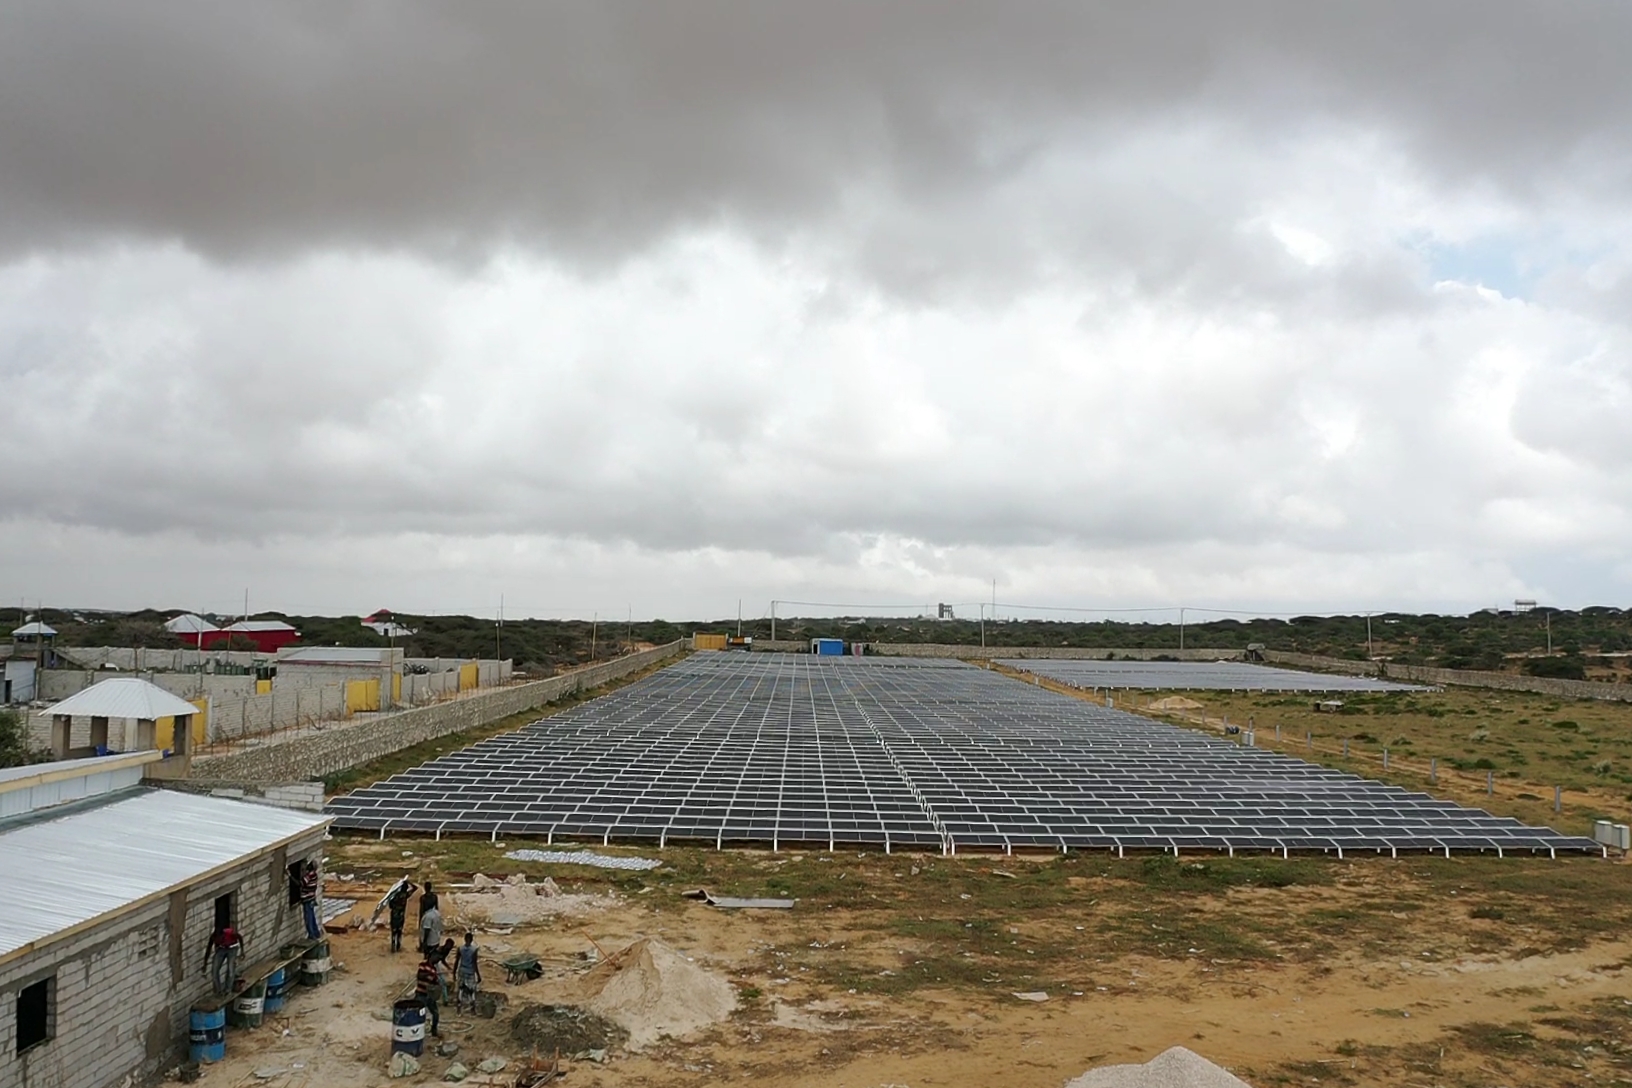 Large scale solar power plants